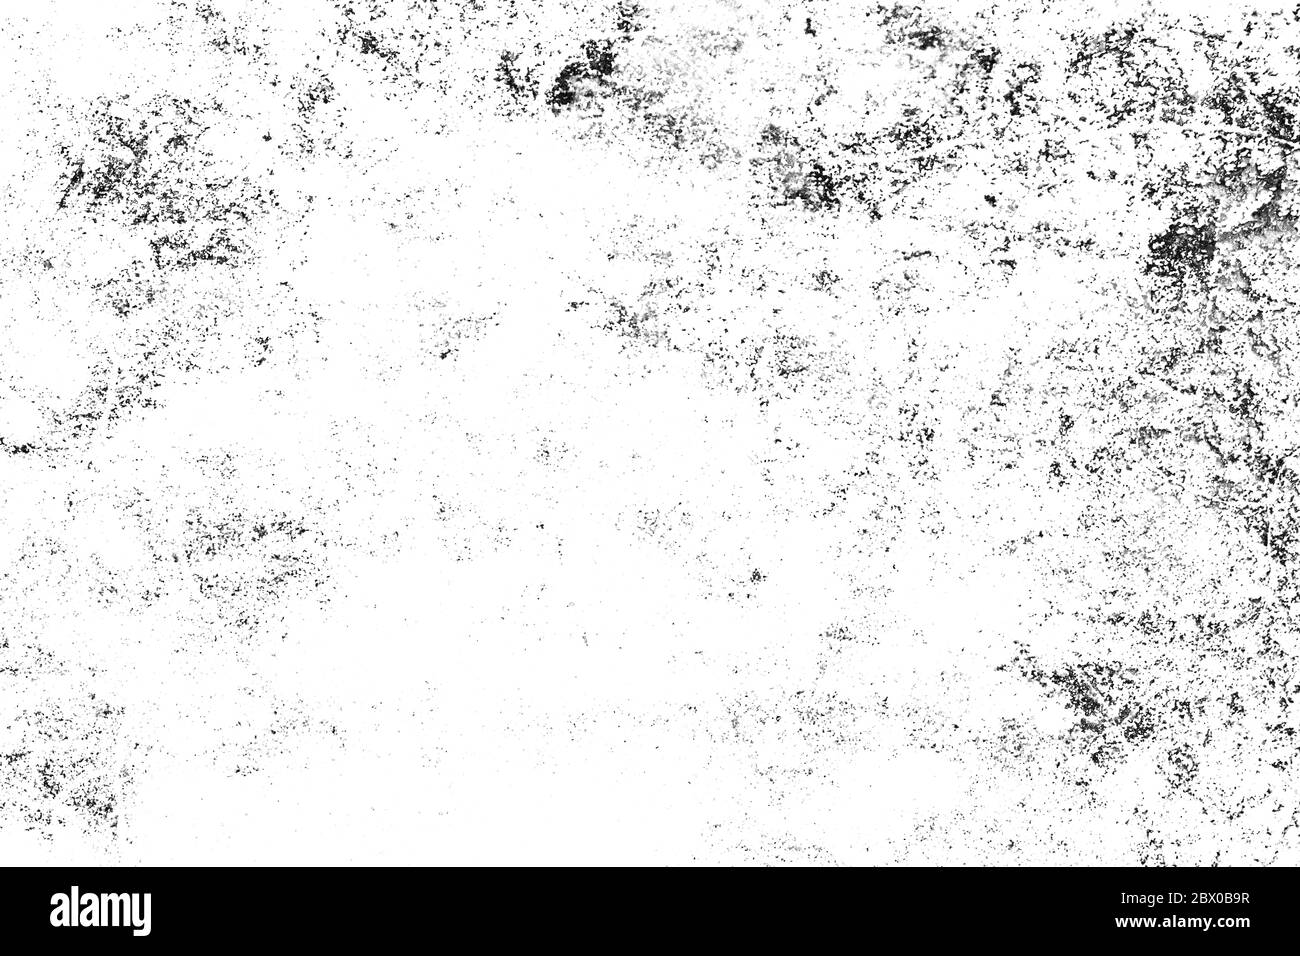 Grunge noir et blanc texture urbaine. Revêtement en poussière sombre et désordonnée sur fond usé. Papier peint abstrait en pointillés, rayé, bruit et grain. Banque D'Images